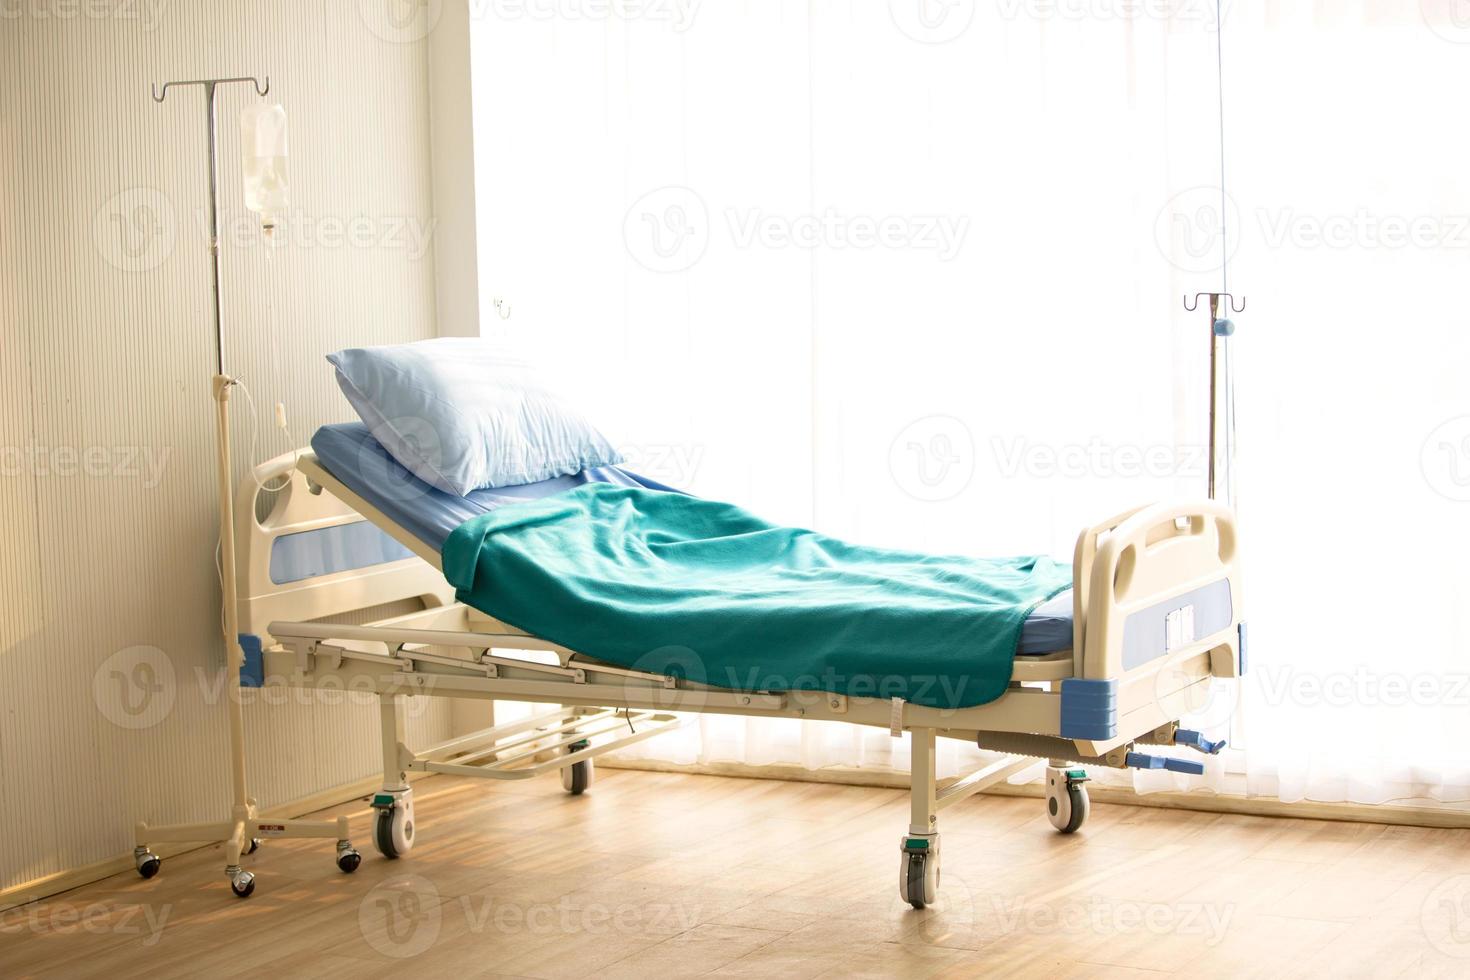 patiëntenbed in ziekenhuisafdeling zonder lichaam foto